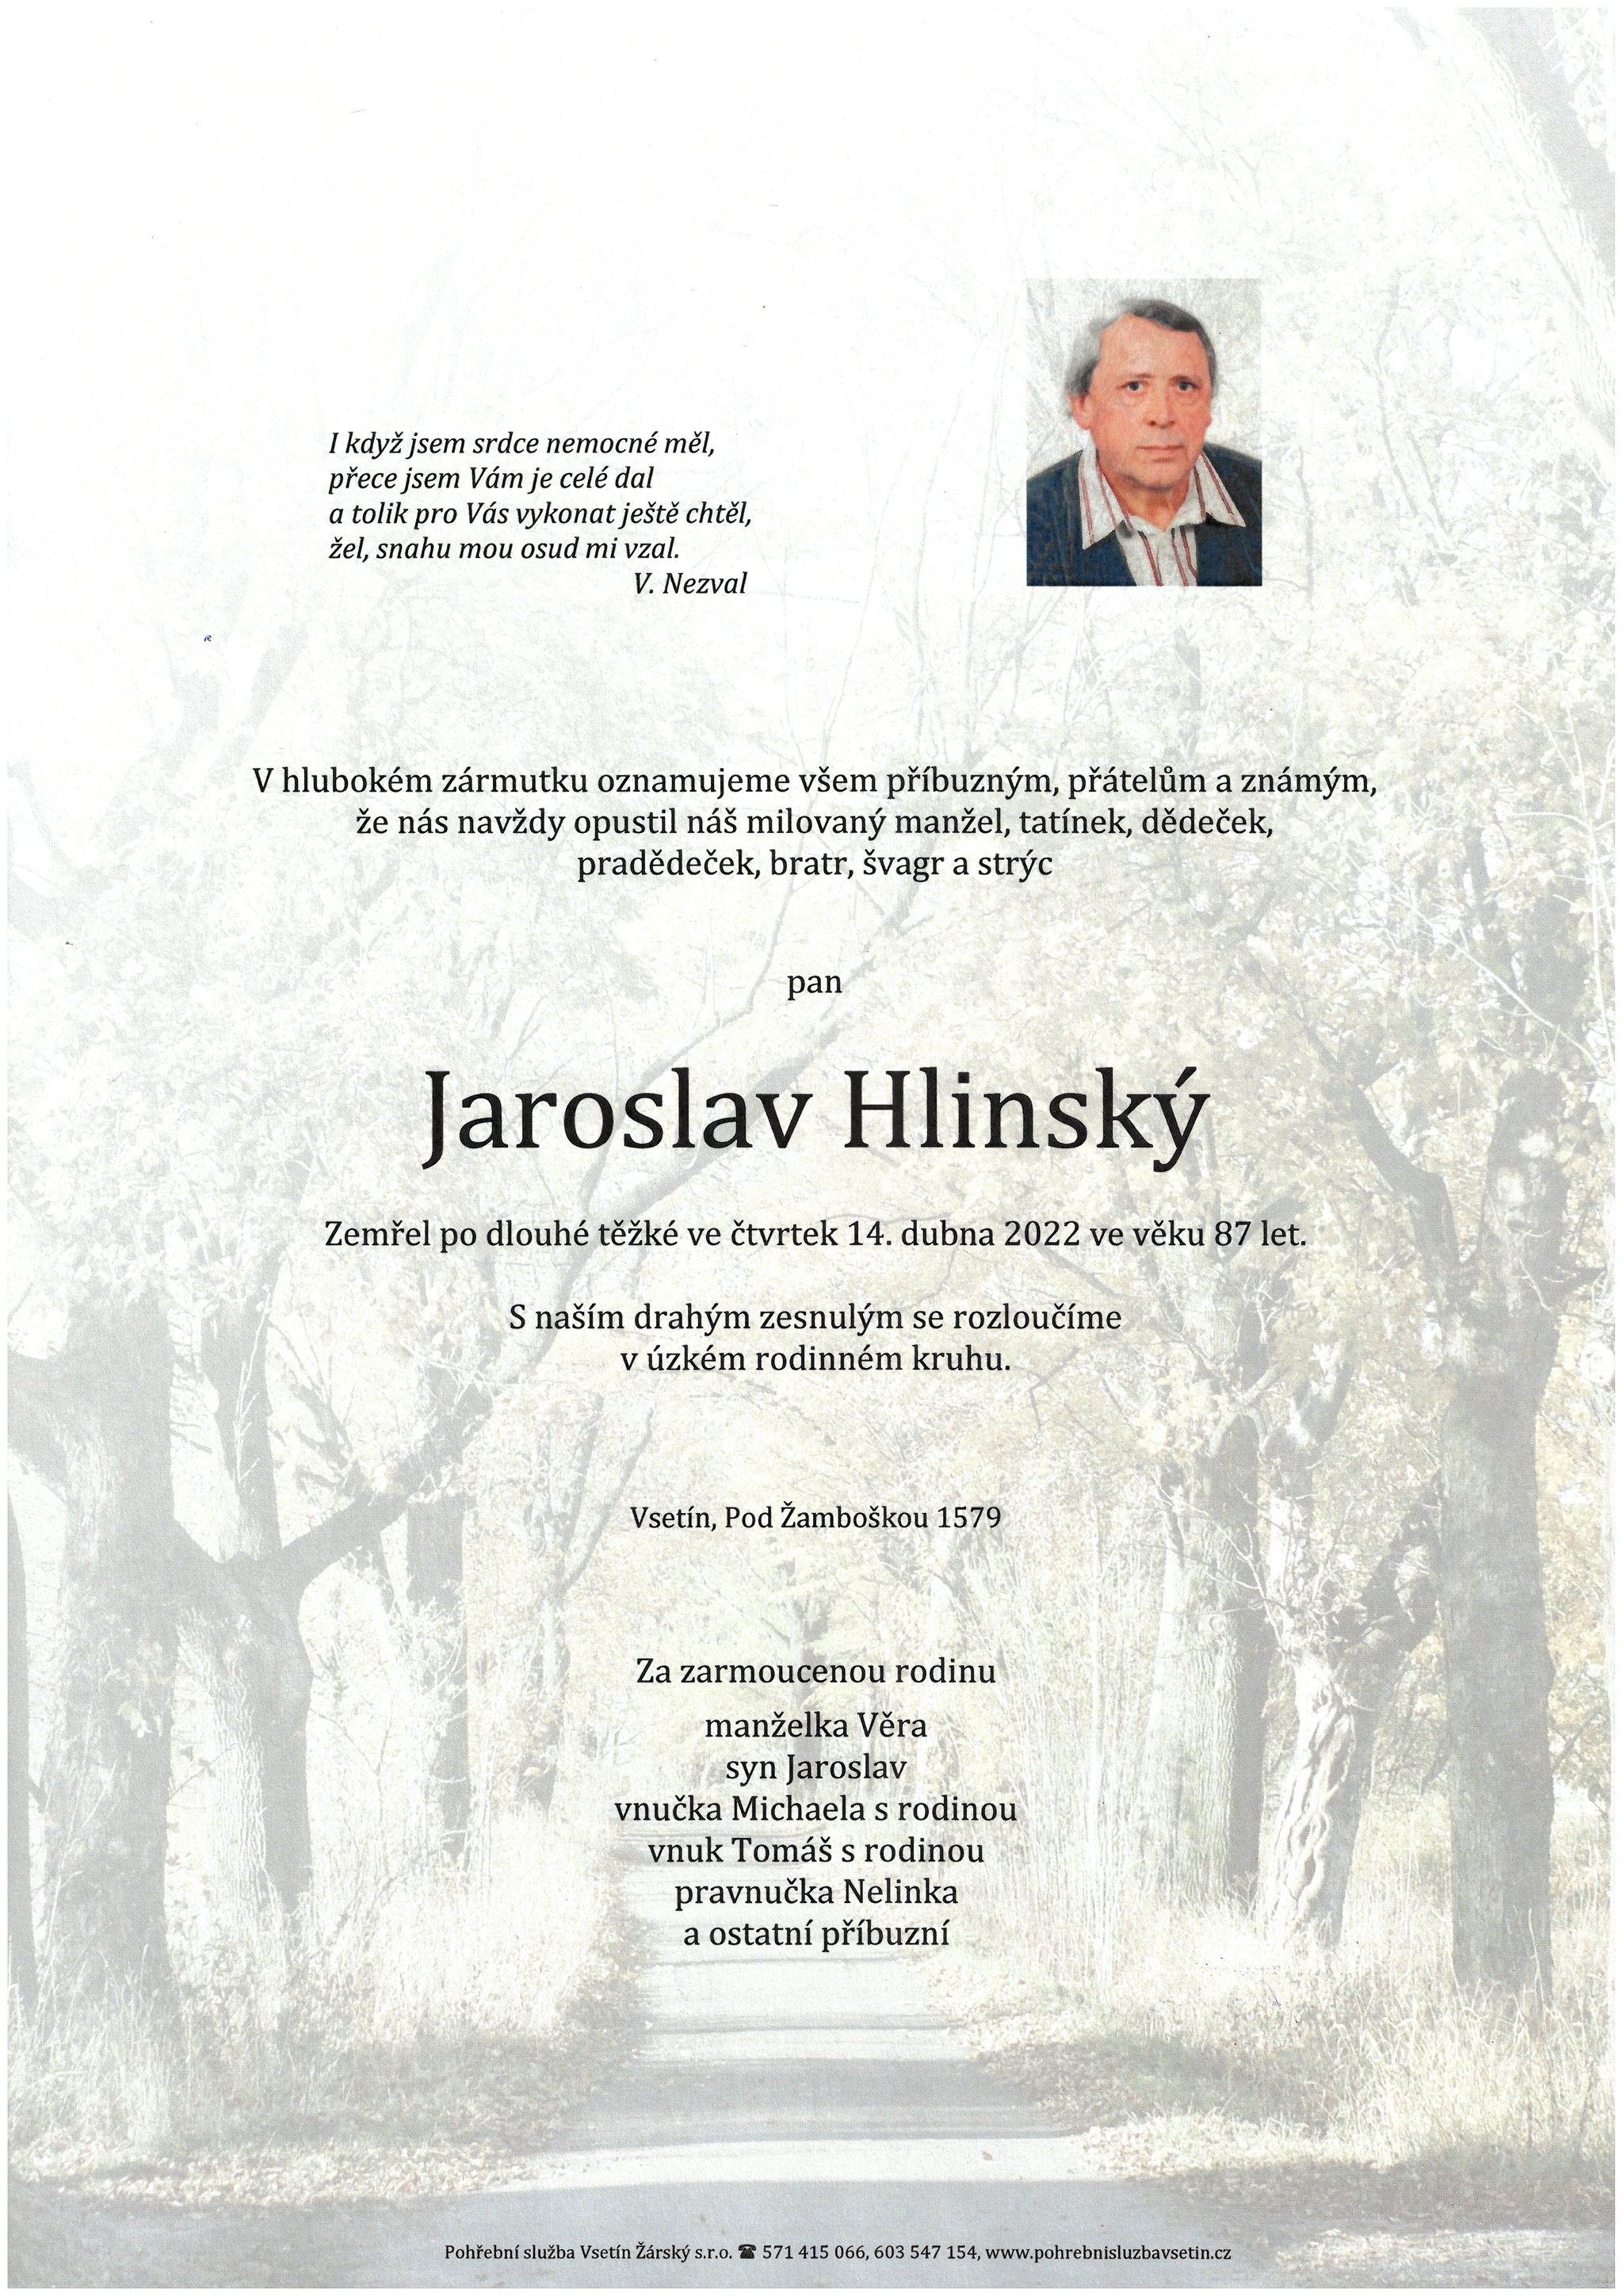 Jaroslav Hlinský